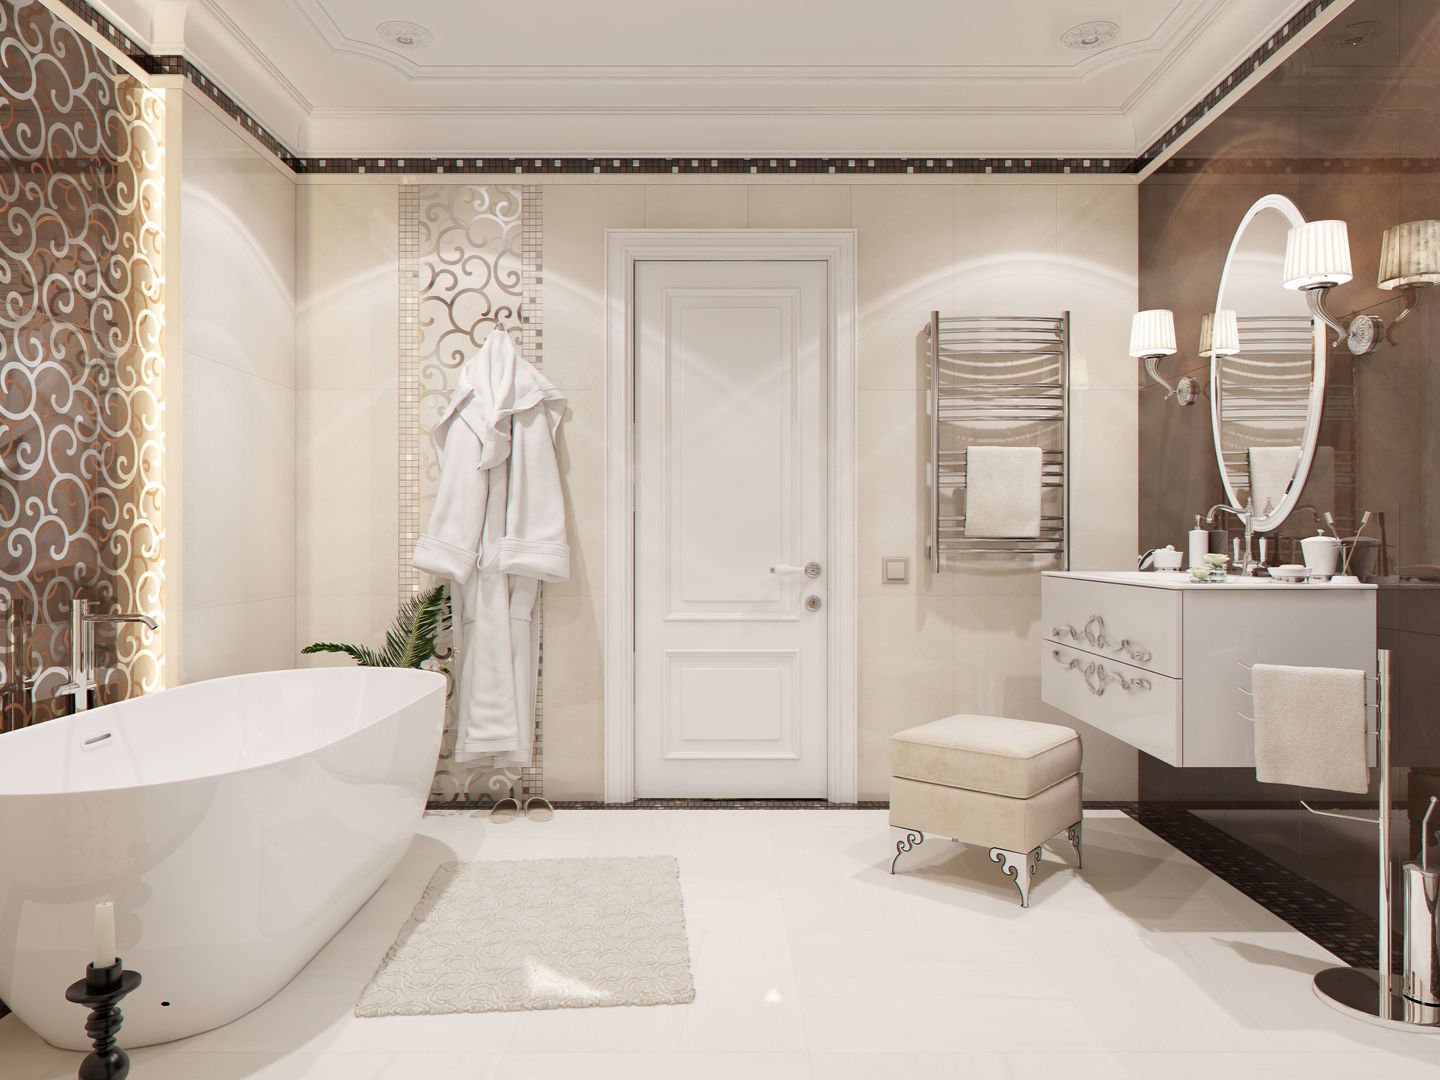 Ванная комната "Magnifique", Студия дизайна Дарьи Одарюк Студия дизайна Дарьи Одарюк ห้องน้ำ